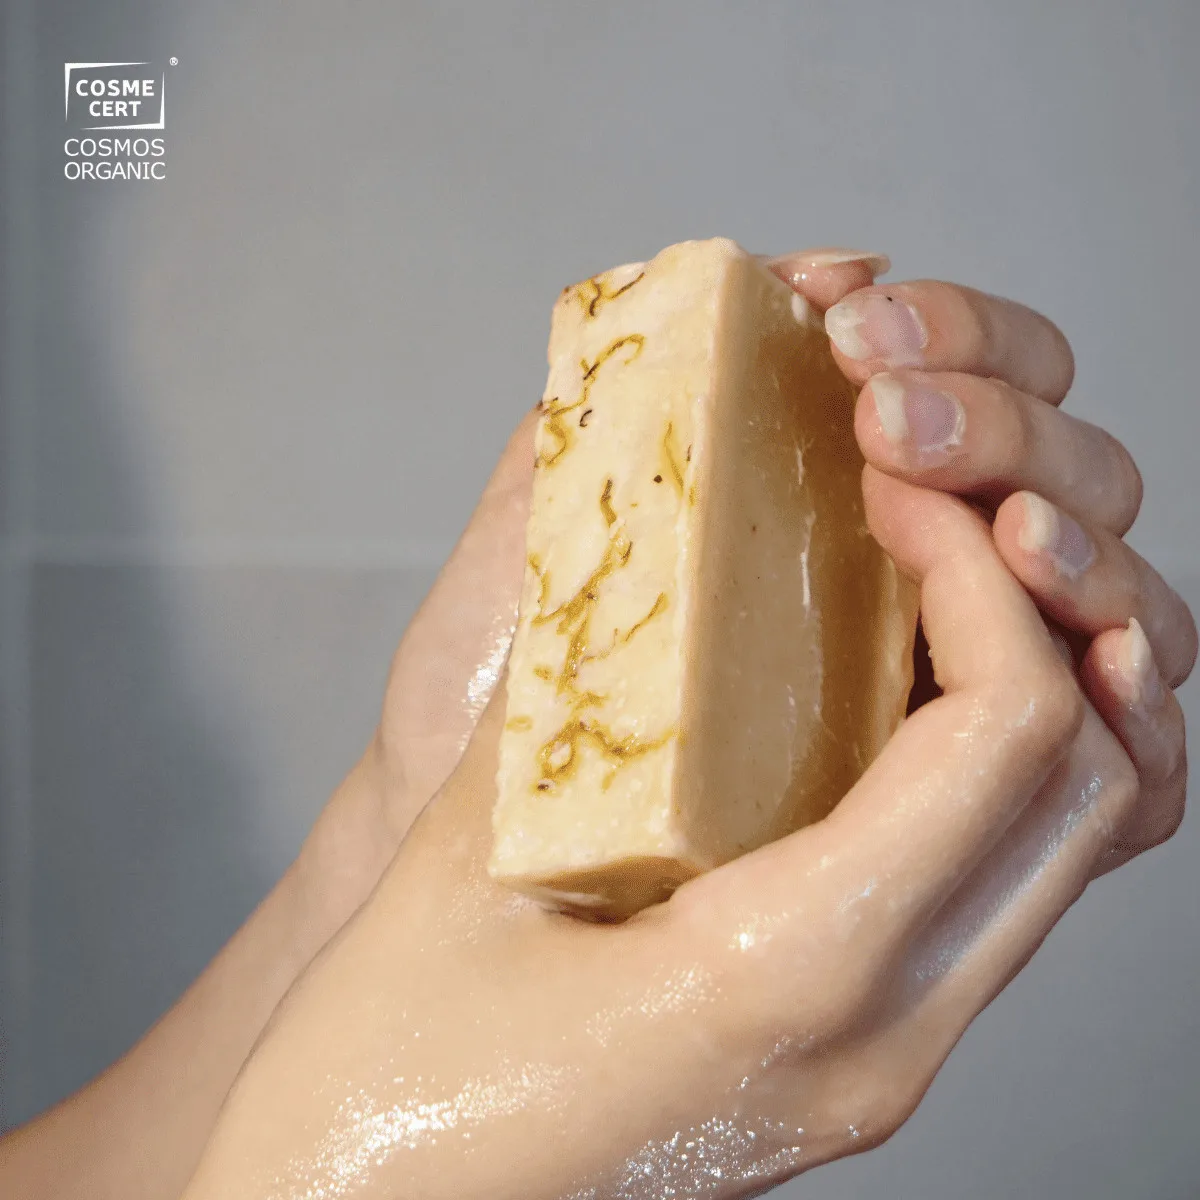 Base de savon bio - Melt and pour - 100% naturel - Formule beauté